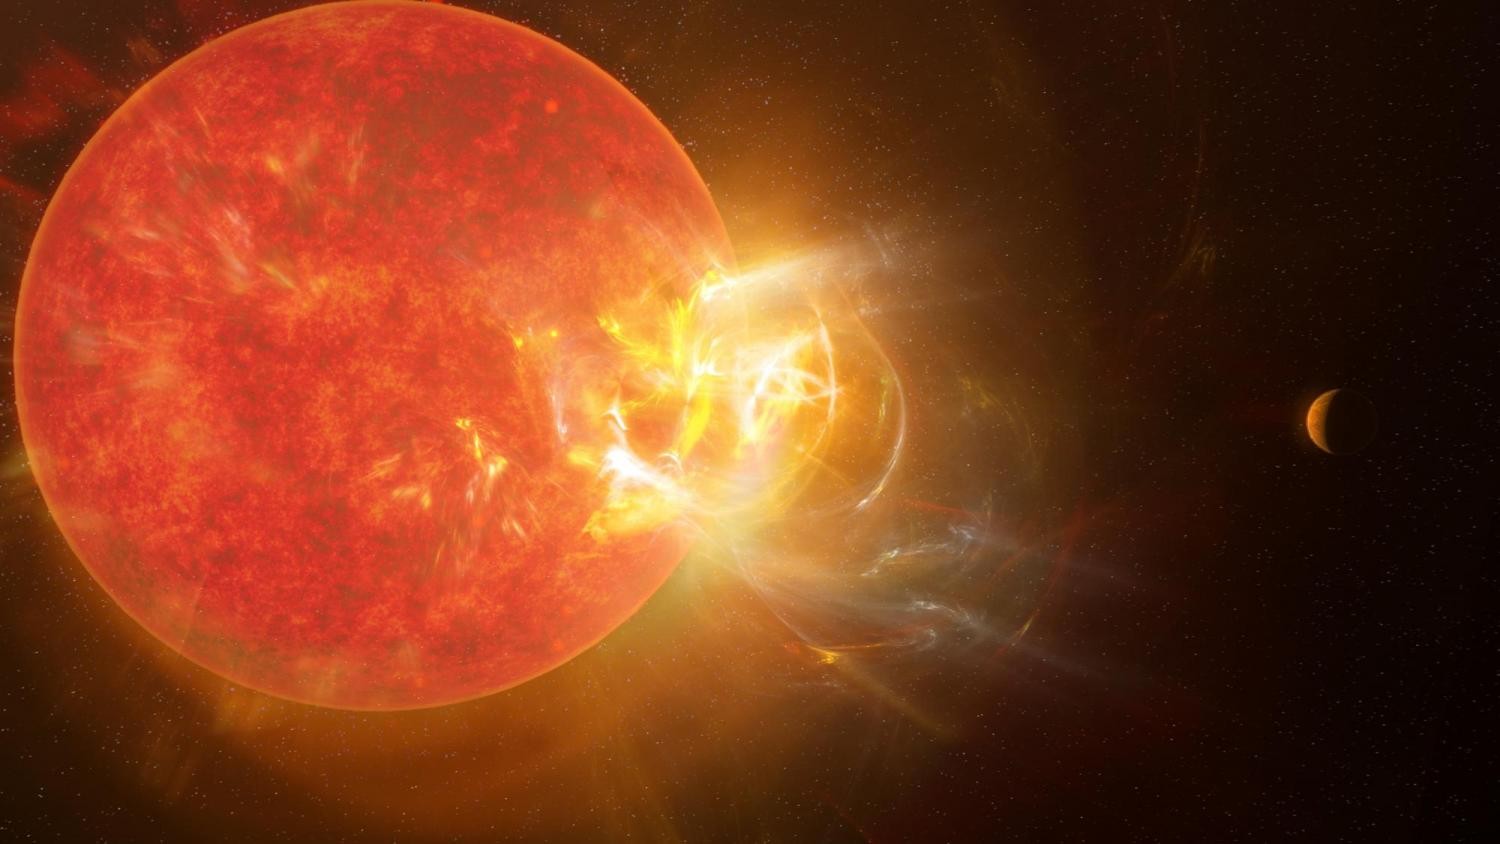 Erupção violenta saindo da estrela Proxima Centauri, a mais próxima do nosso Sol (Foto: NRAO/S.Dagnello)